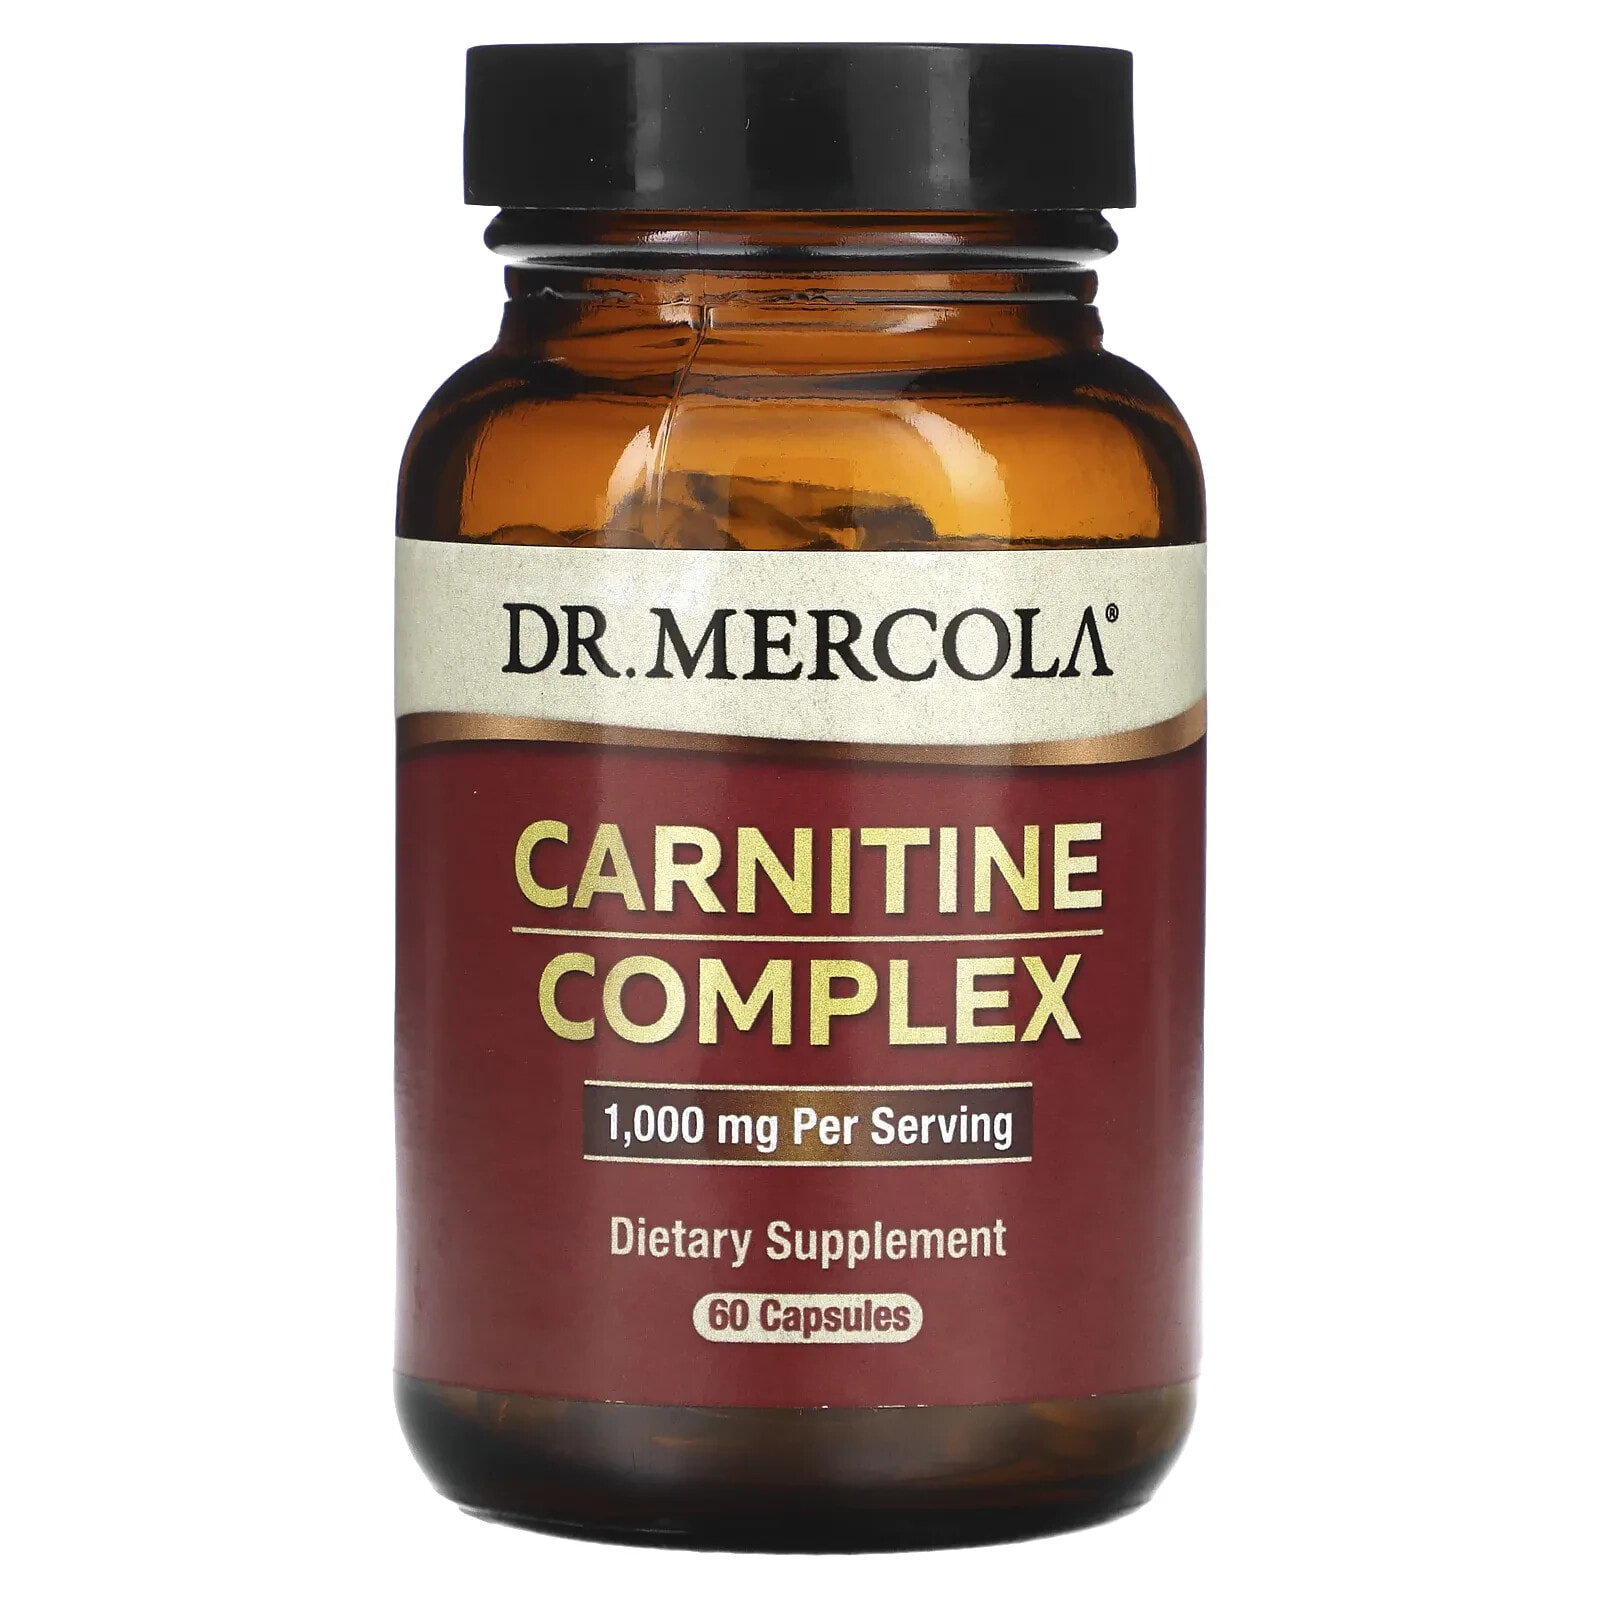 Carnitine Complex, 1,000 mg, 60 Capsules (500 mg per Capsule)